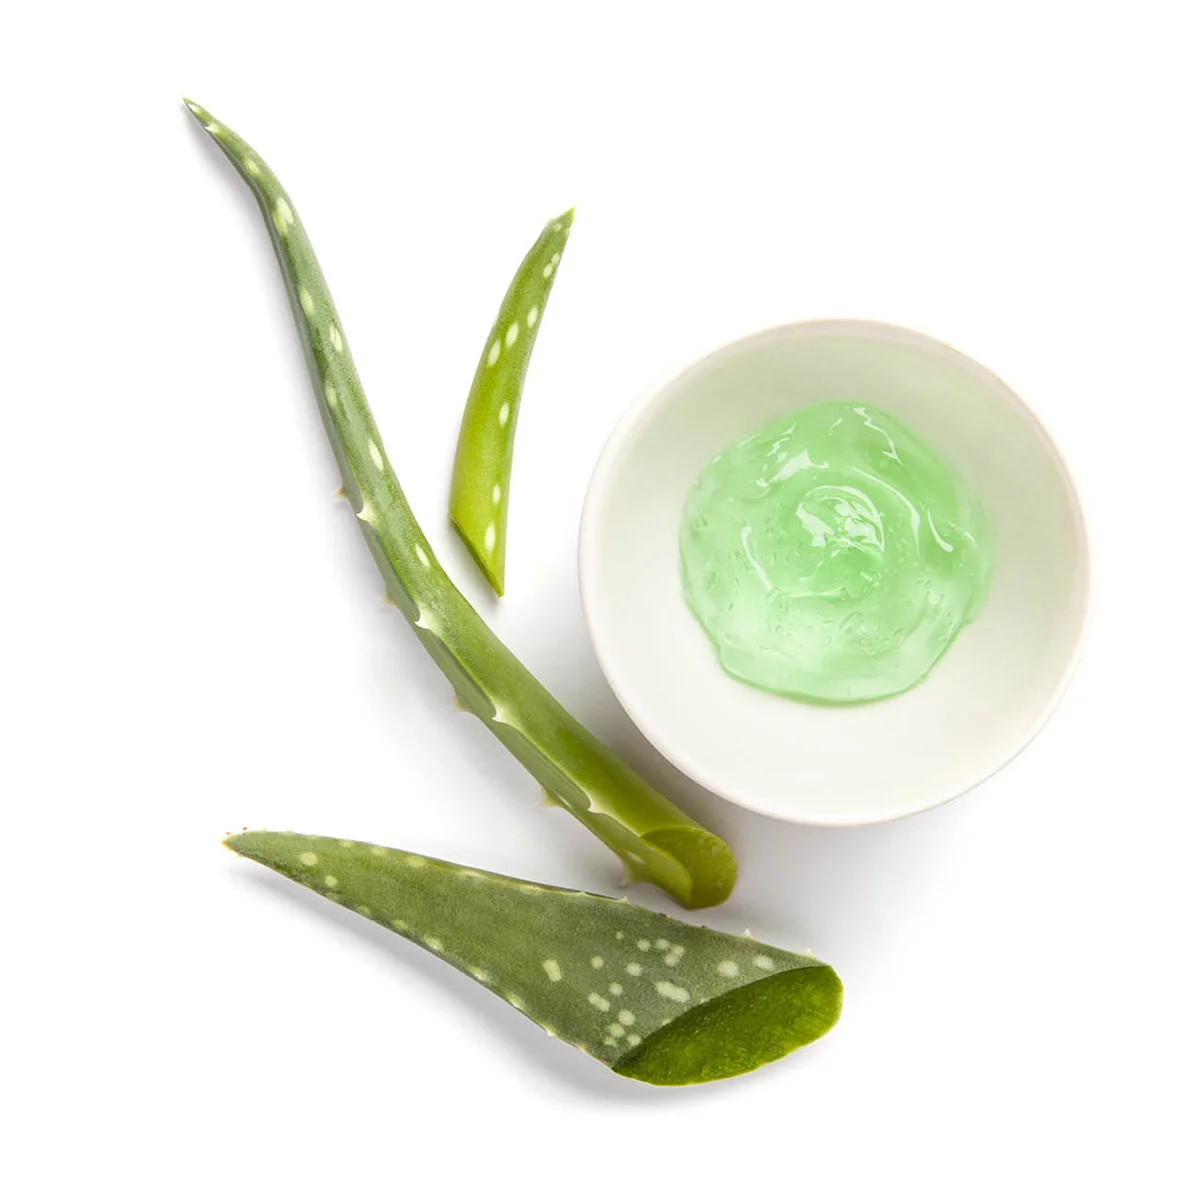 In eine kleine weiße Schale wurde eine Probe des liquiden hellgrünen Enhancer Skin Conditioning Gels gegeben. Daneben liegen ein paar Blätter der Aloe Vera Pflanze.